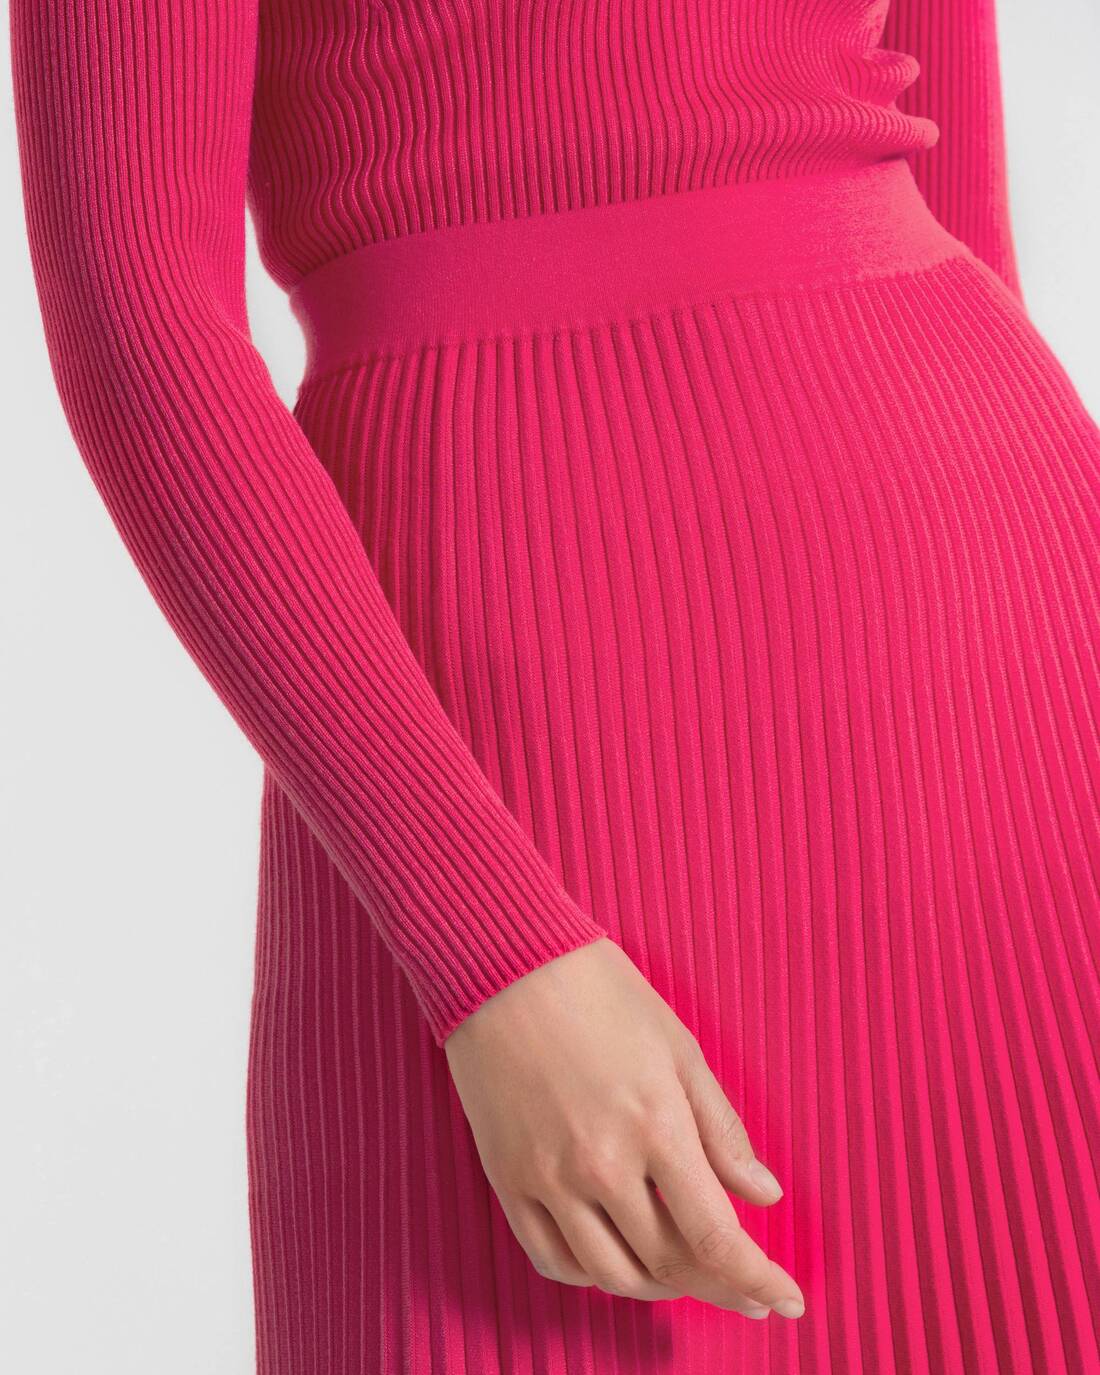 Pleated knit midi skirt